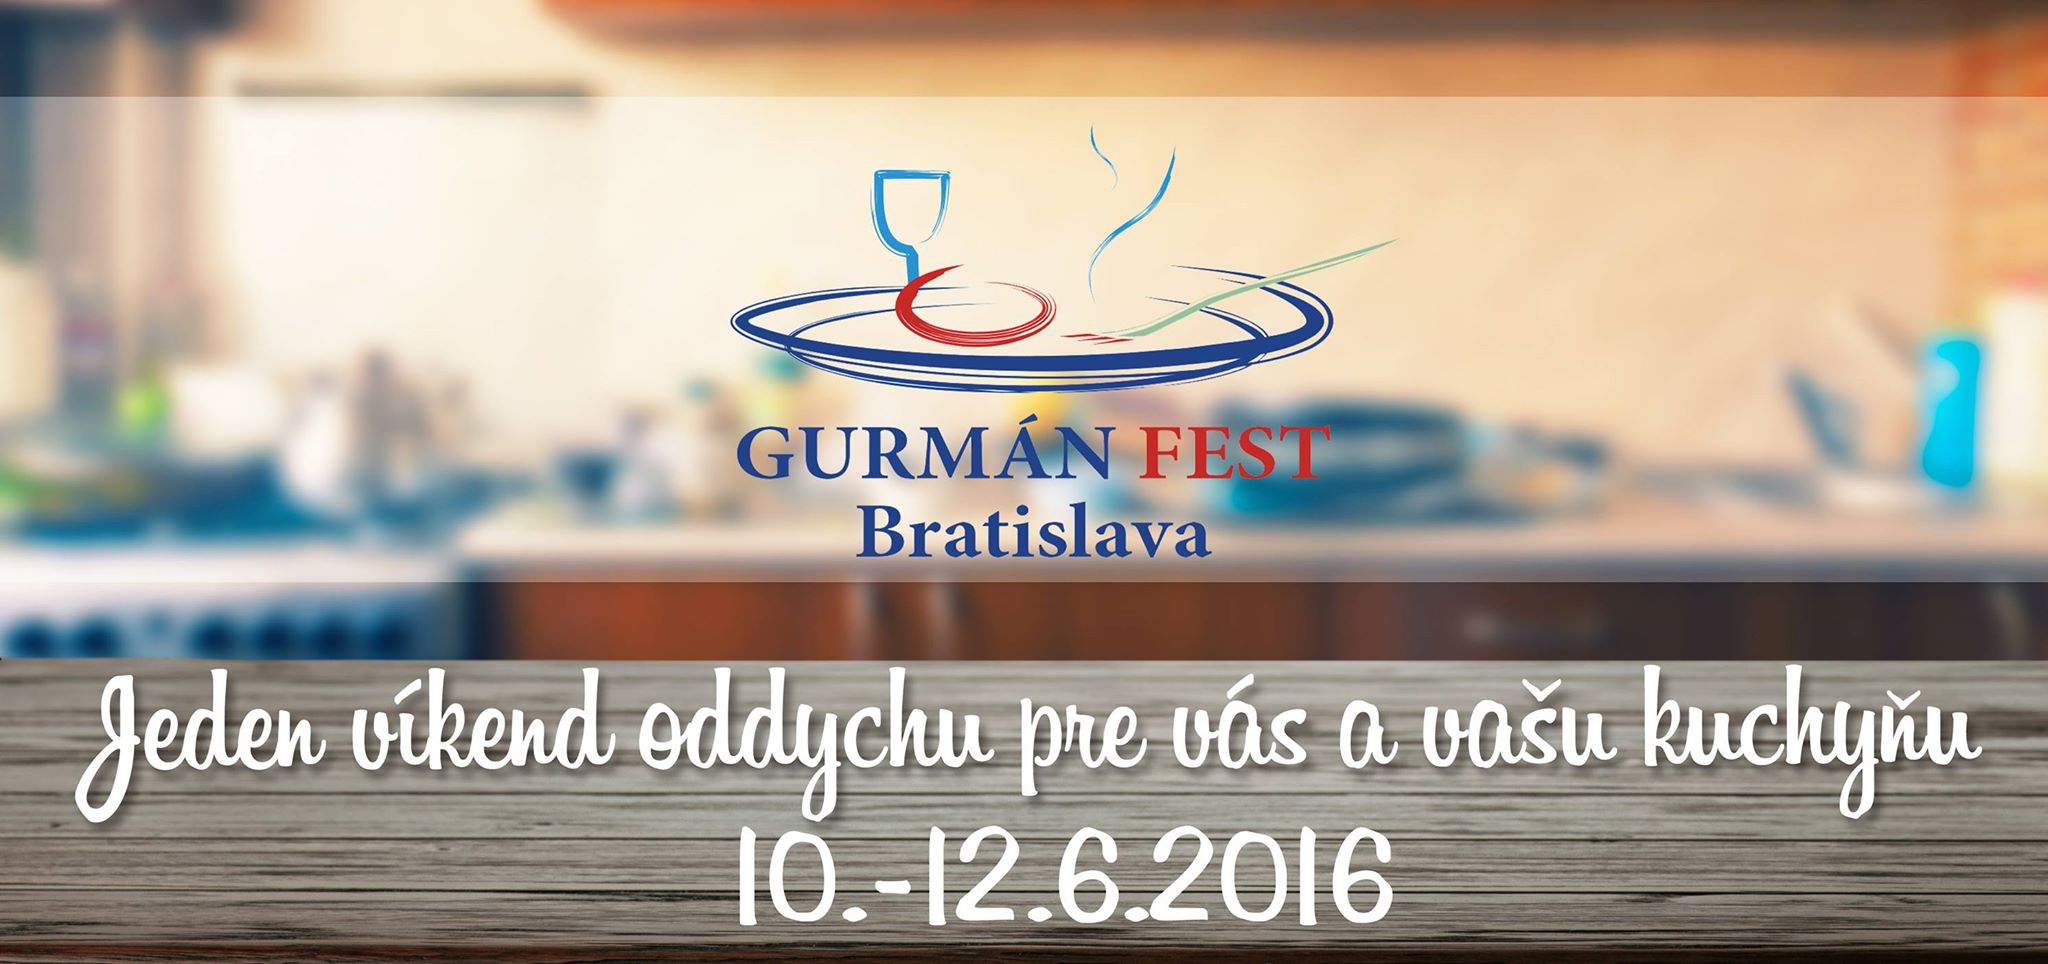 Gurmn Fest Bratislava 2016 - 8. ronk